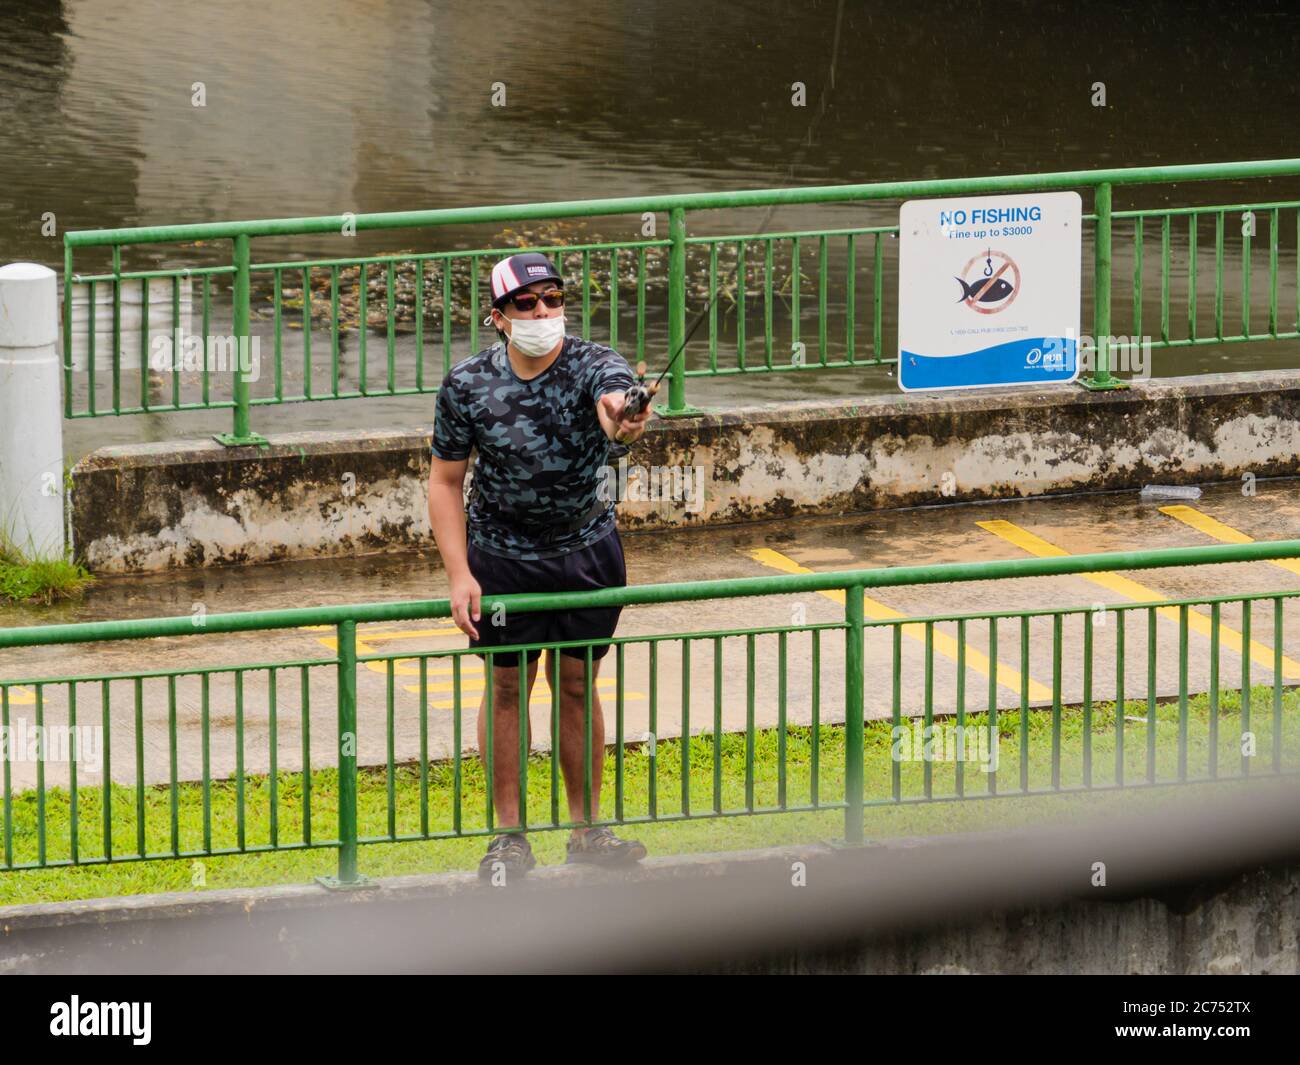 SINGAPUR – JULI 09 2020 – Mann in einer Schutzmaske bricht das Gesetz durch illegale Fischerei neben einem No-Fishing-Schild am Park Connector Trail bei SPR Stockfoto